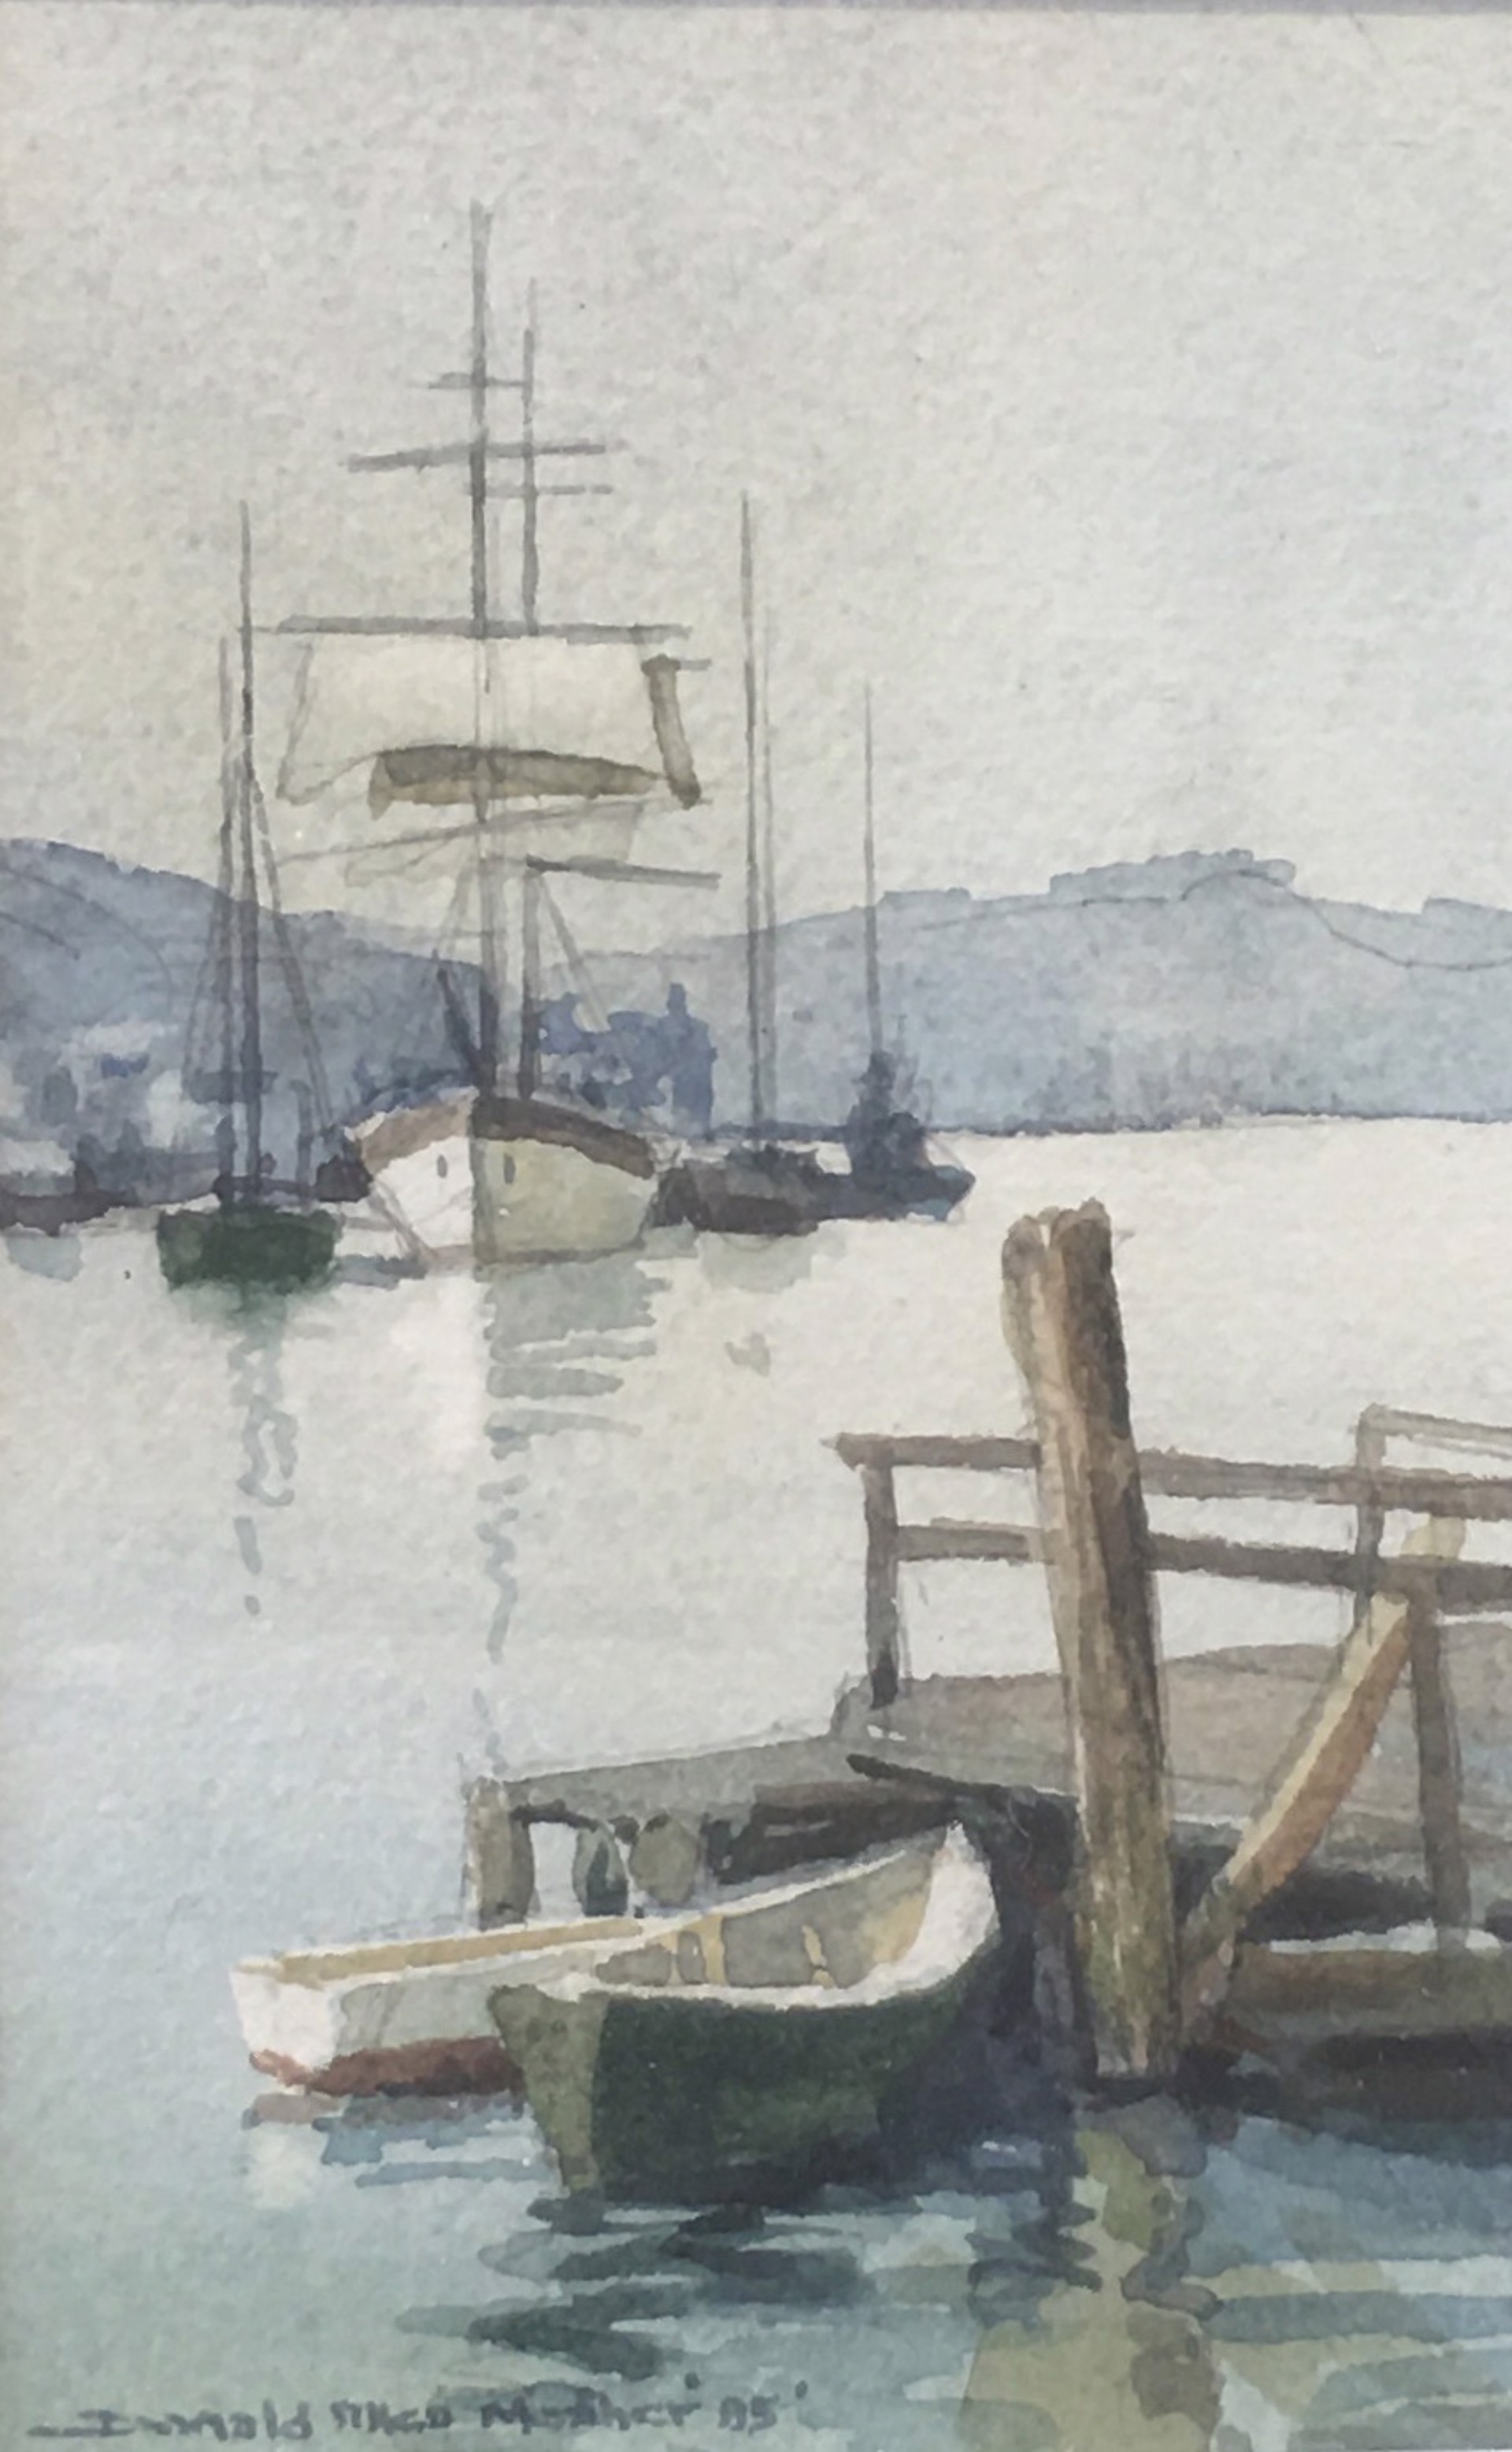 Salt Barque in Gloucester Harbor by Donald Allen Mosher (1945-2014)